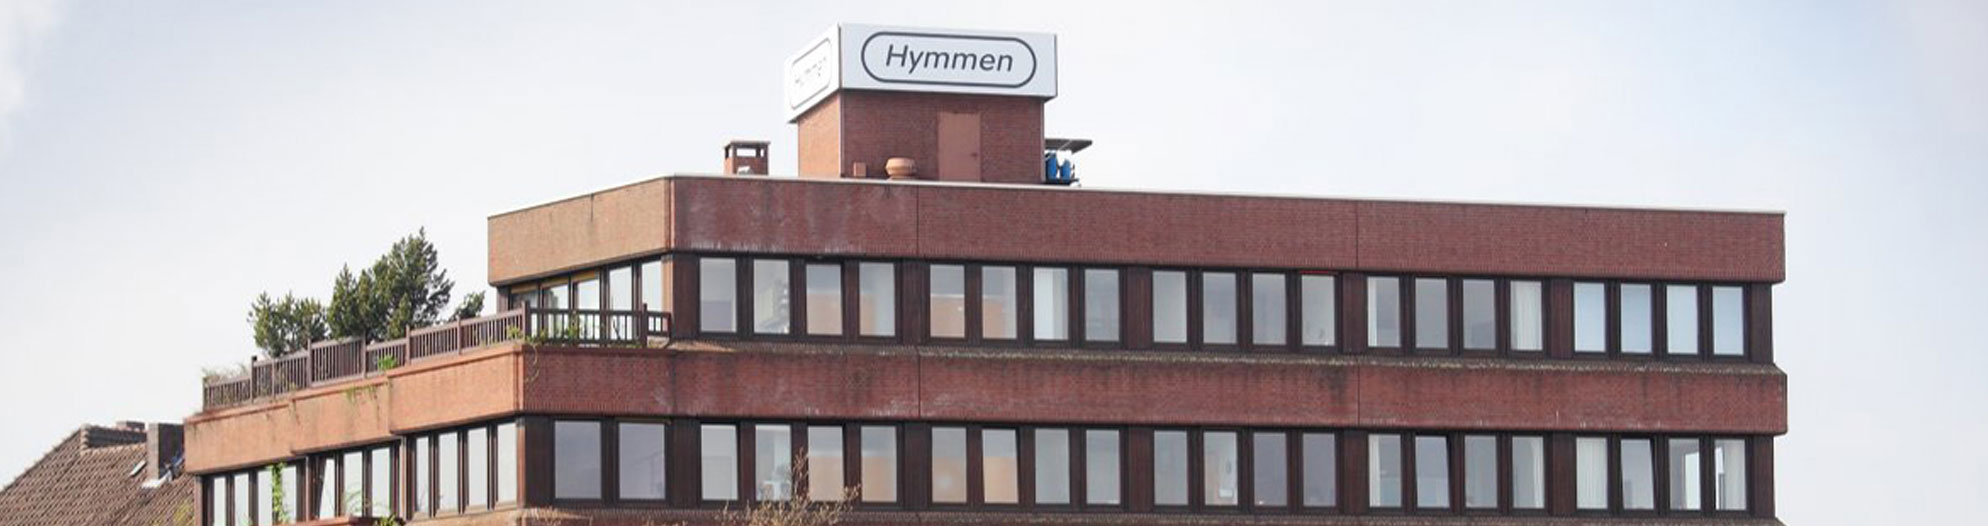 <h2>Hymmen GmbH</h2>